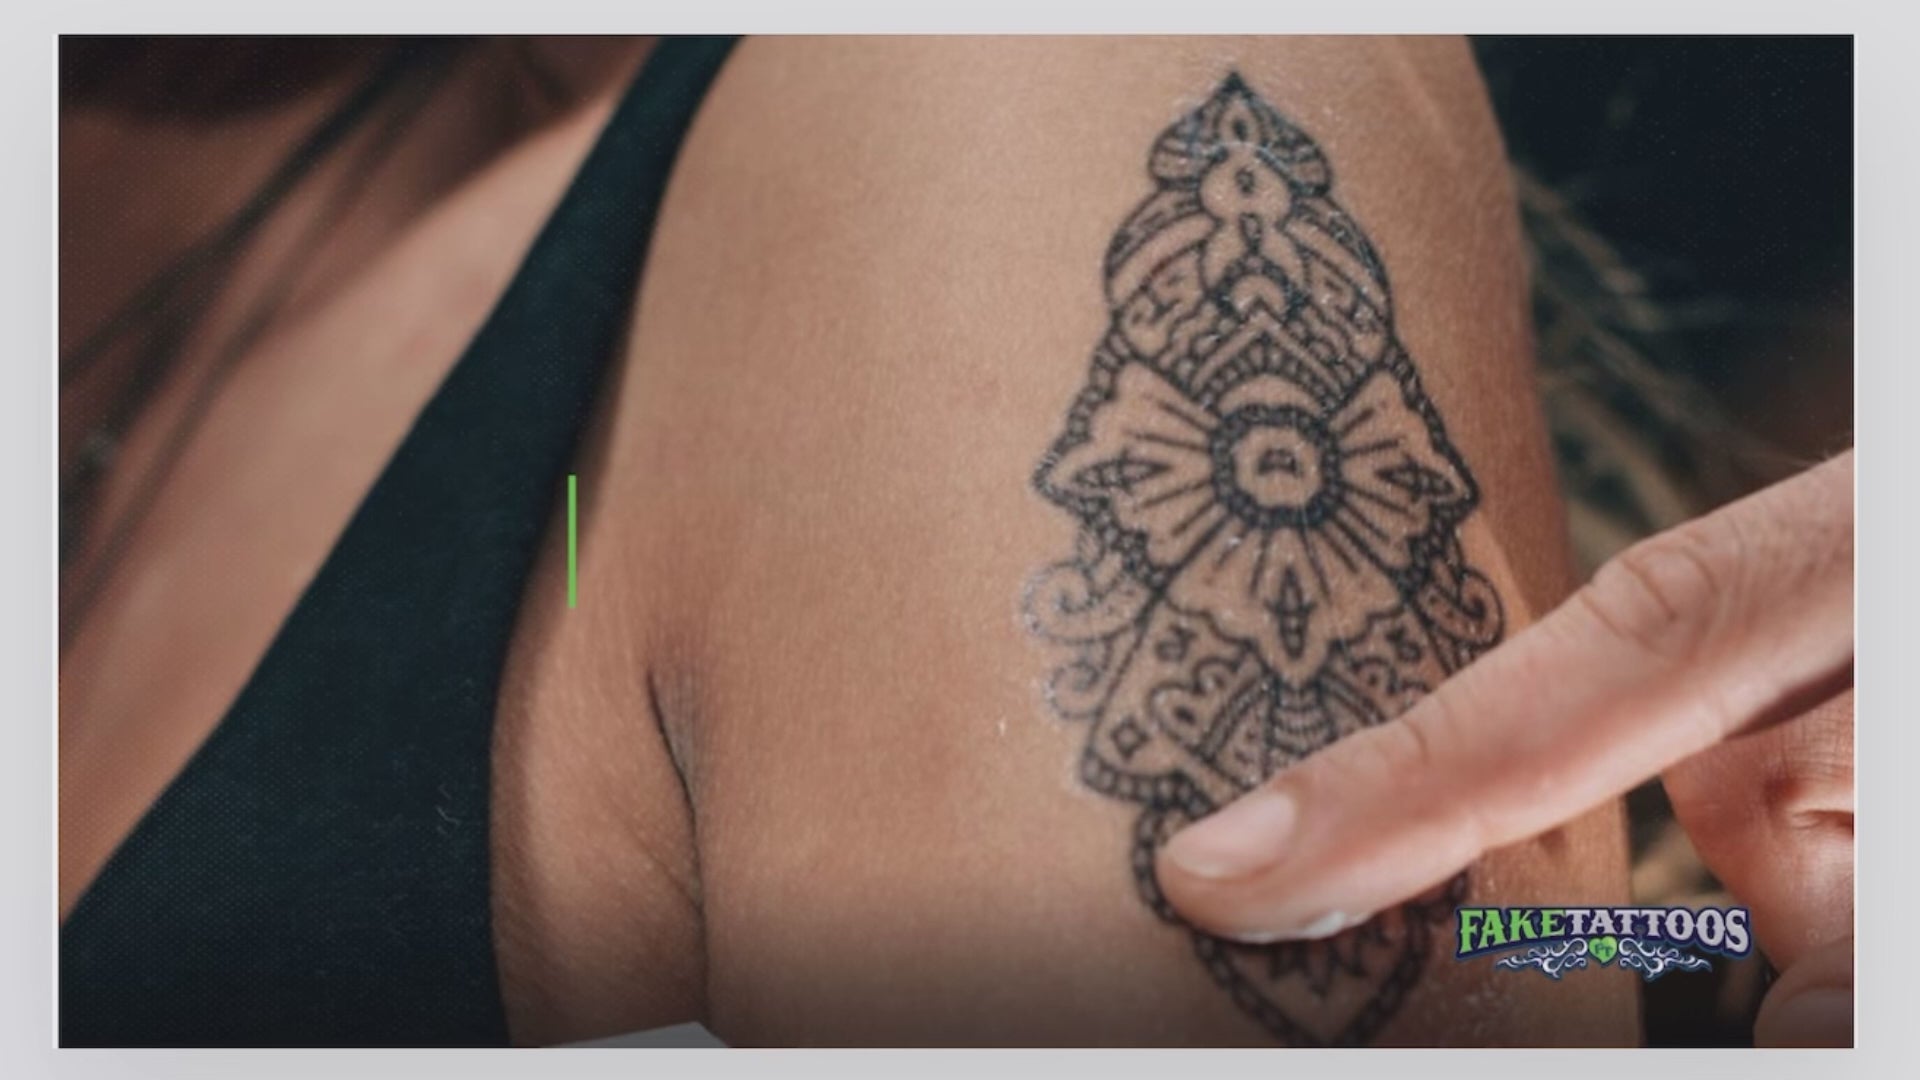 DJ Khaled Tattoo Design Idea - OhMyTat